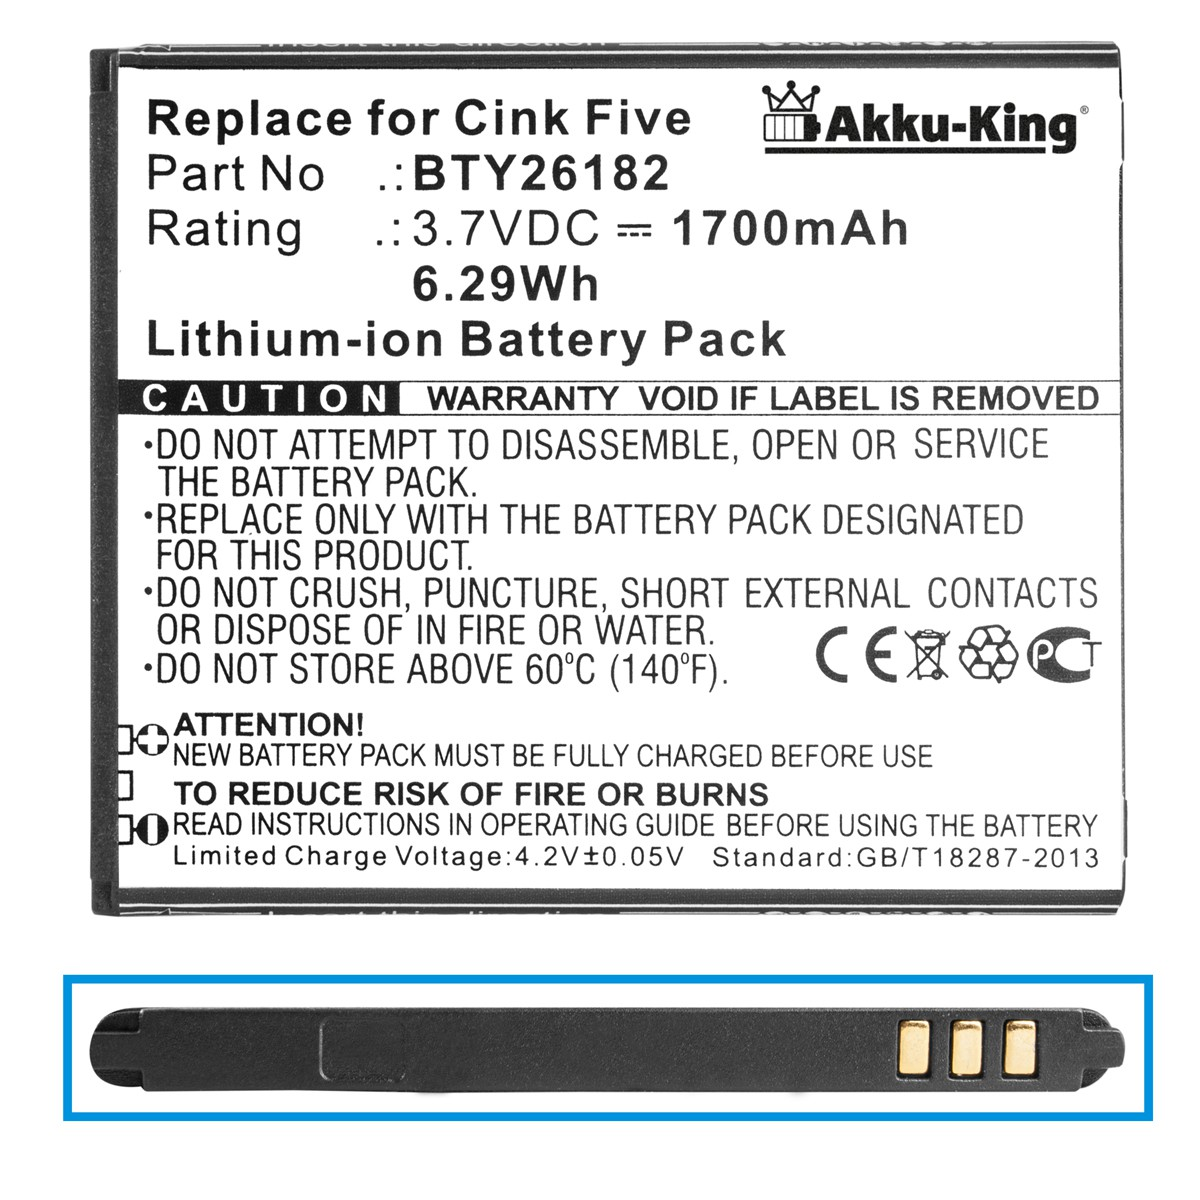 Volt, 3.7 Li-Ion Handy-Akku, Akku mit BTY26182 AKKU-KING 1700mAh kompatibel Wiko